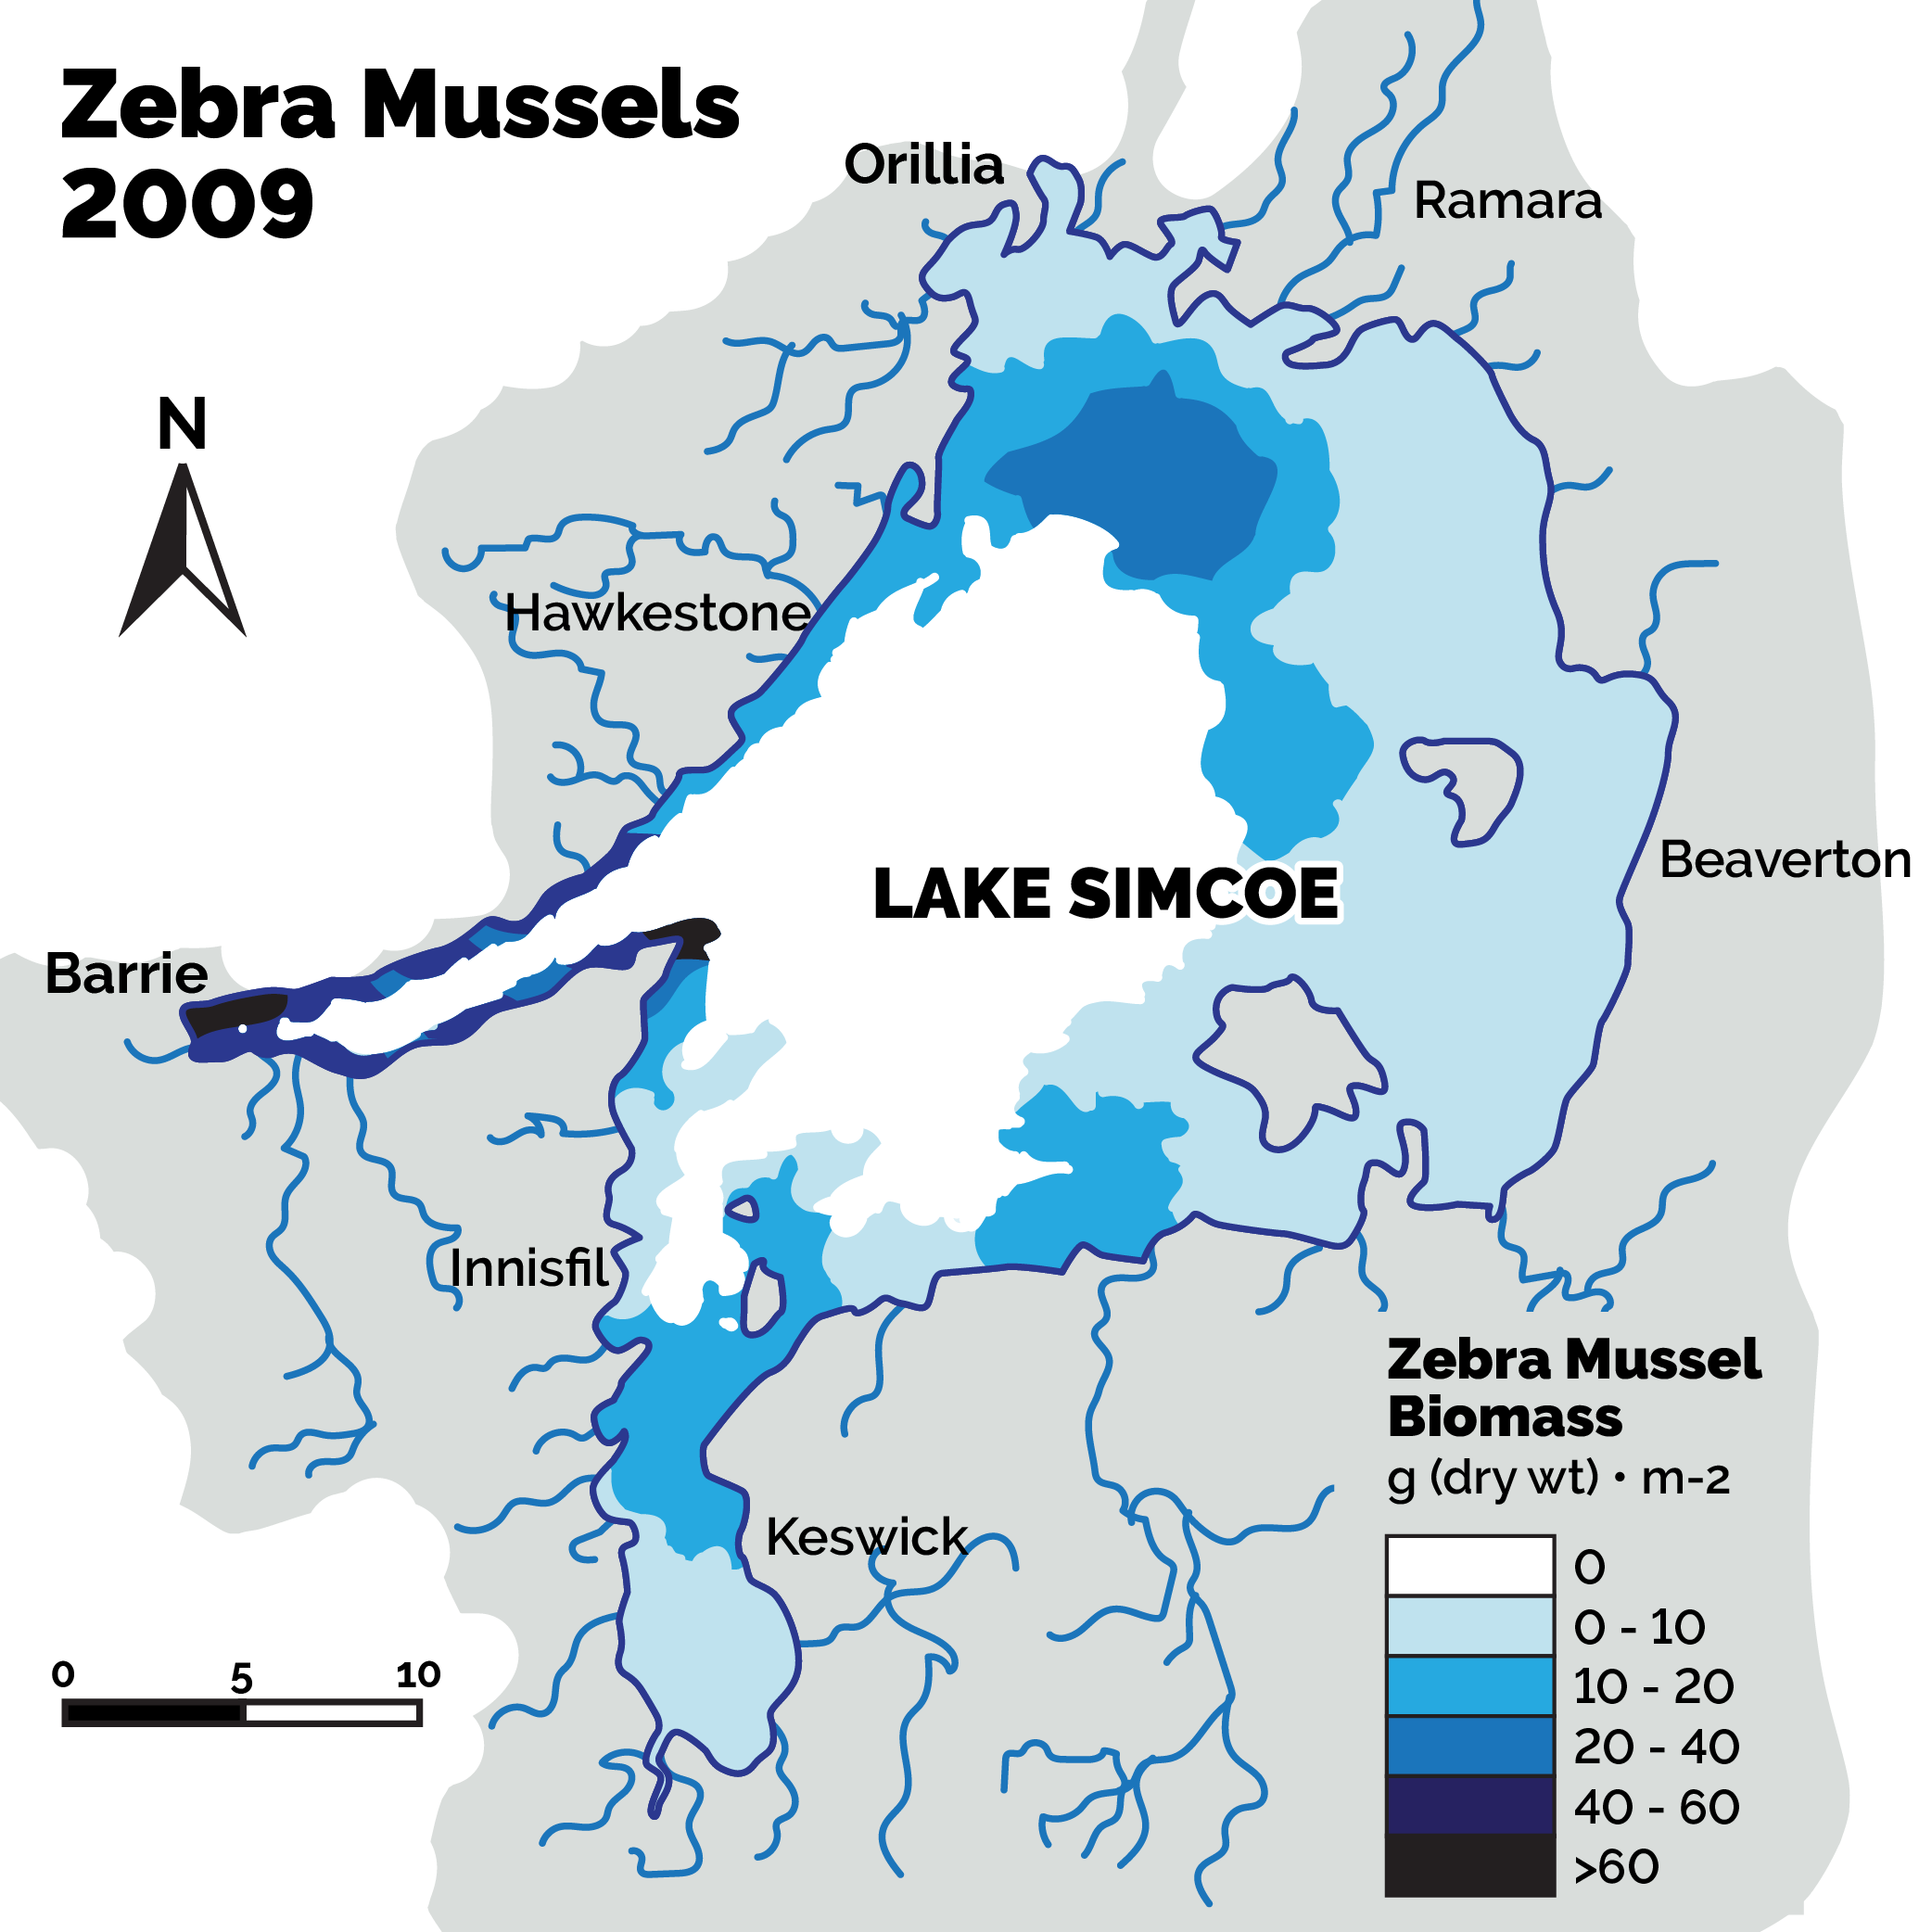 Zebra mussels in 2009